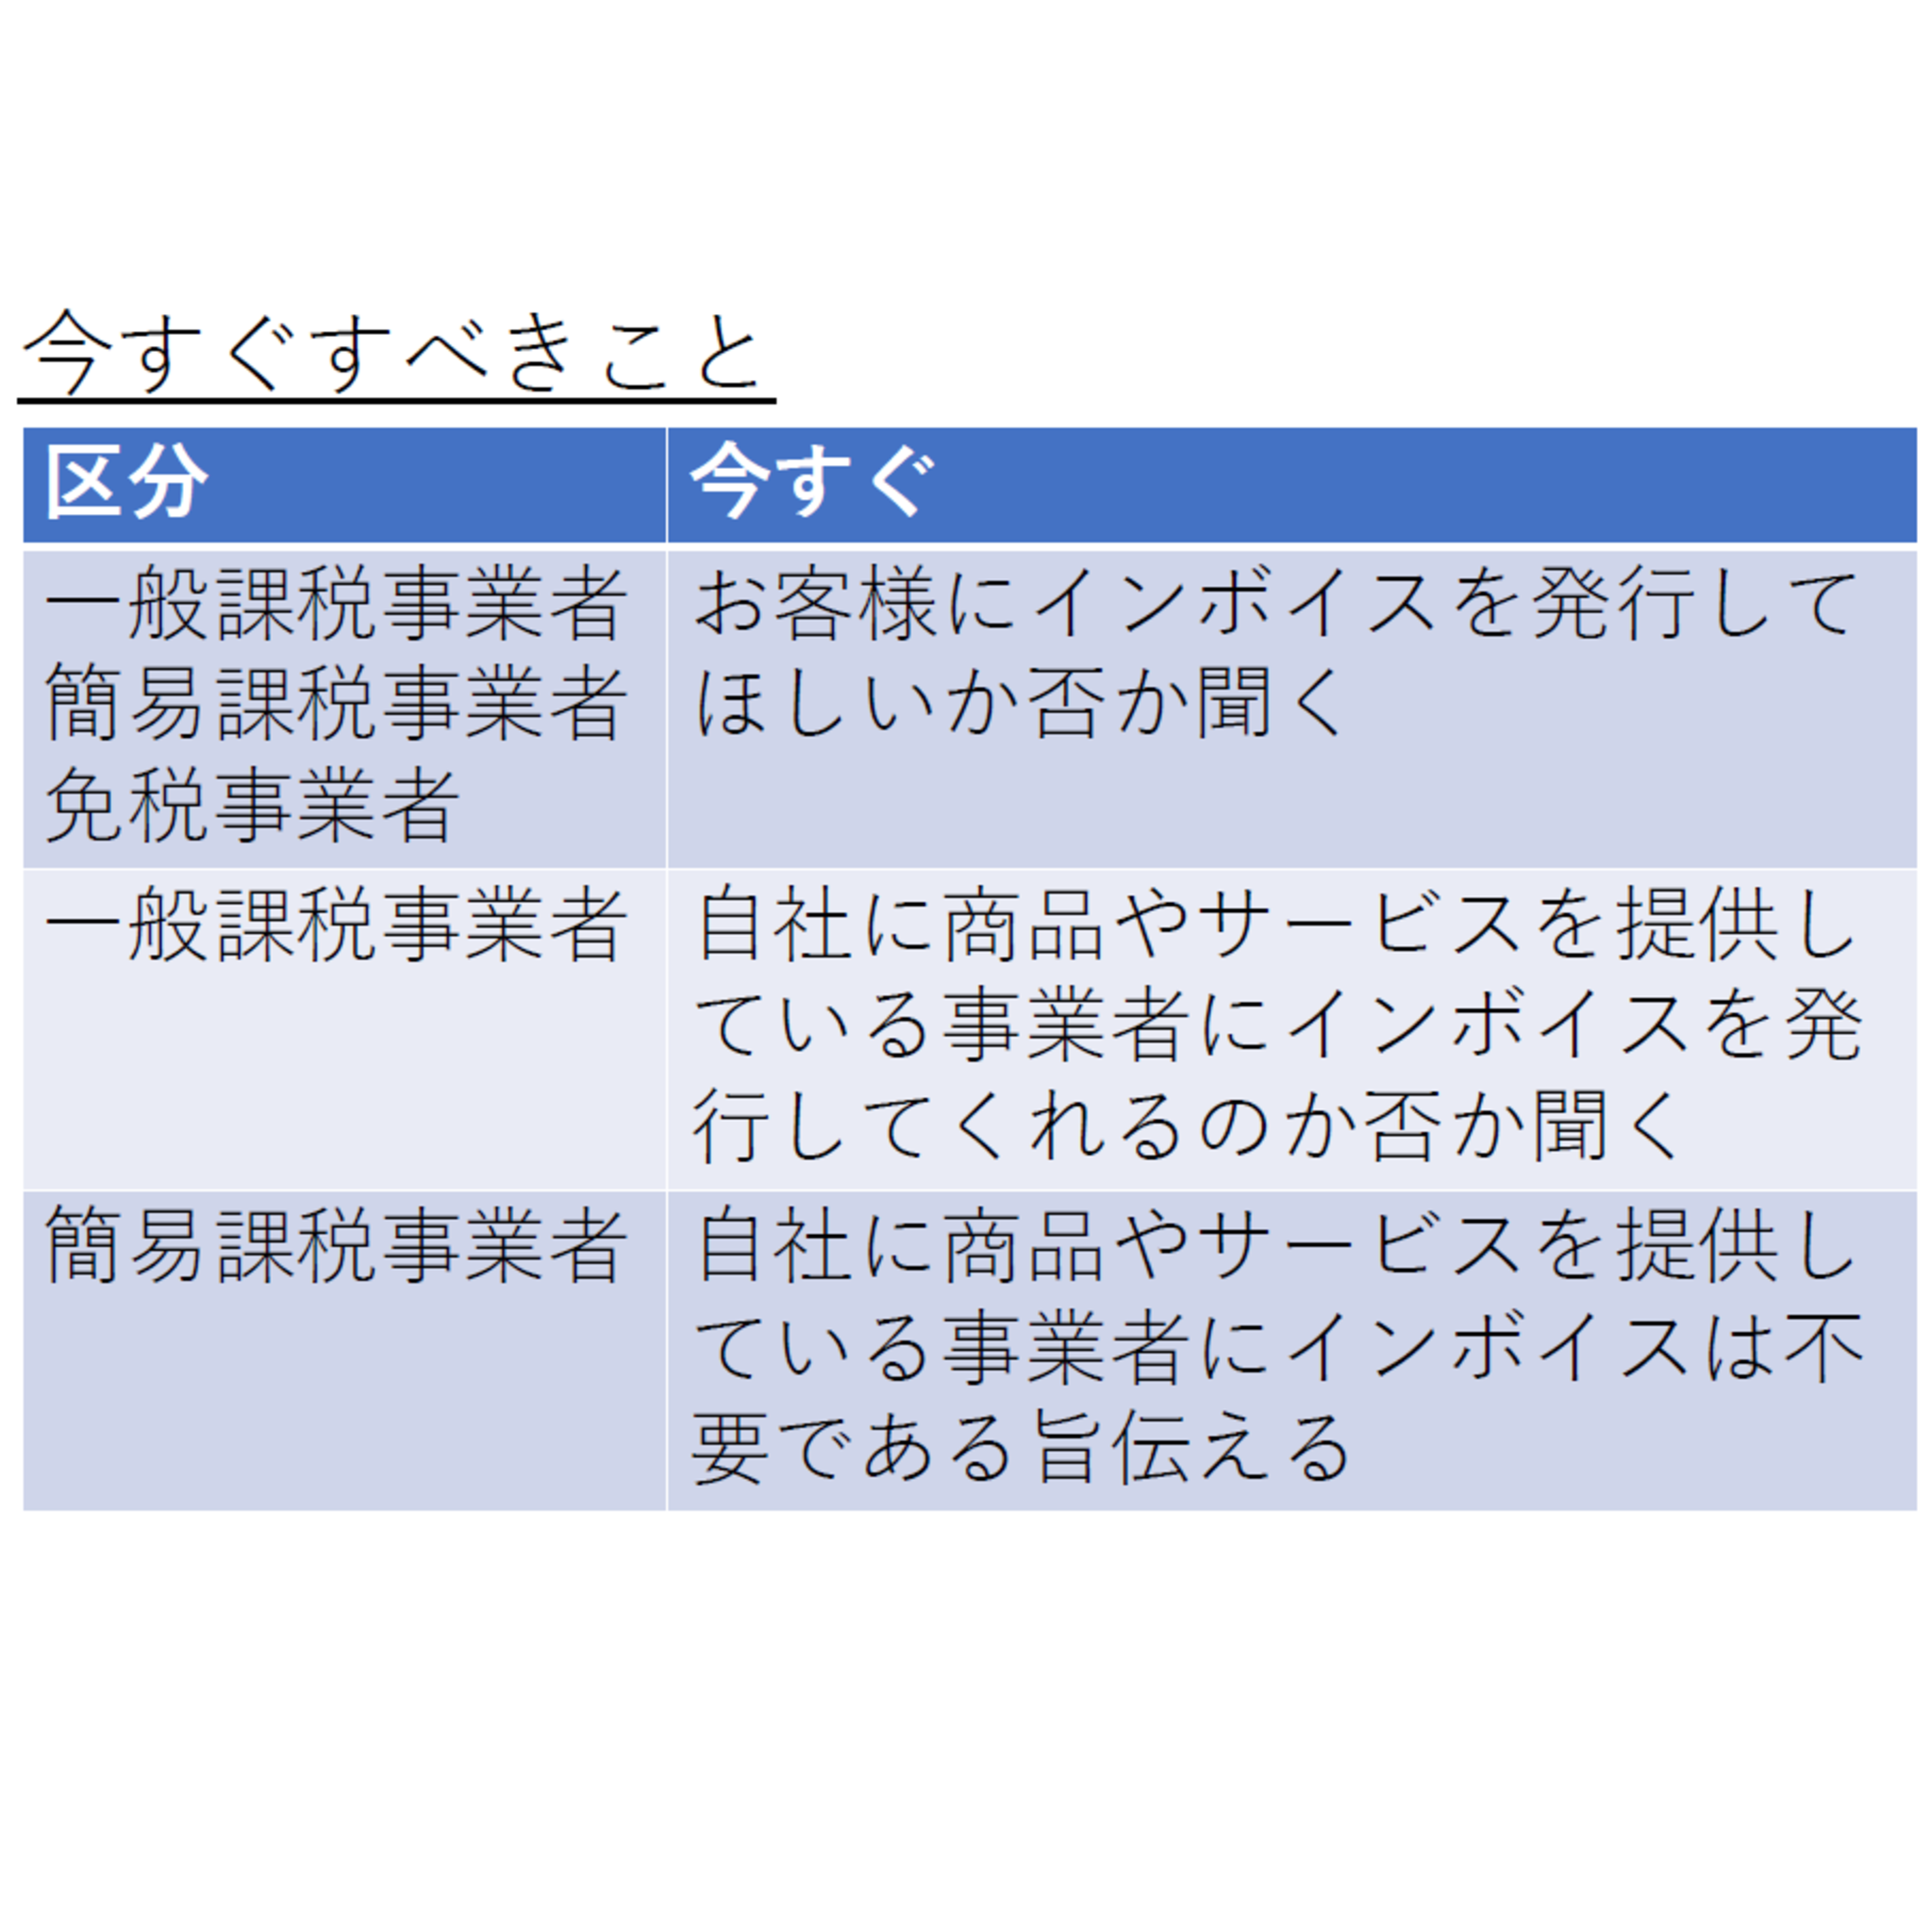 小松崎哲史税理士事務所からのお知らせ(インボイス制度への対応として今すぐすべきこと)に関する写真